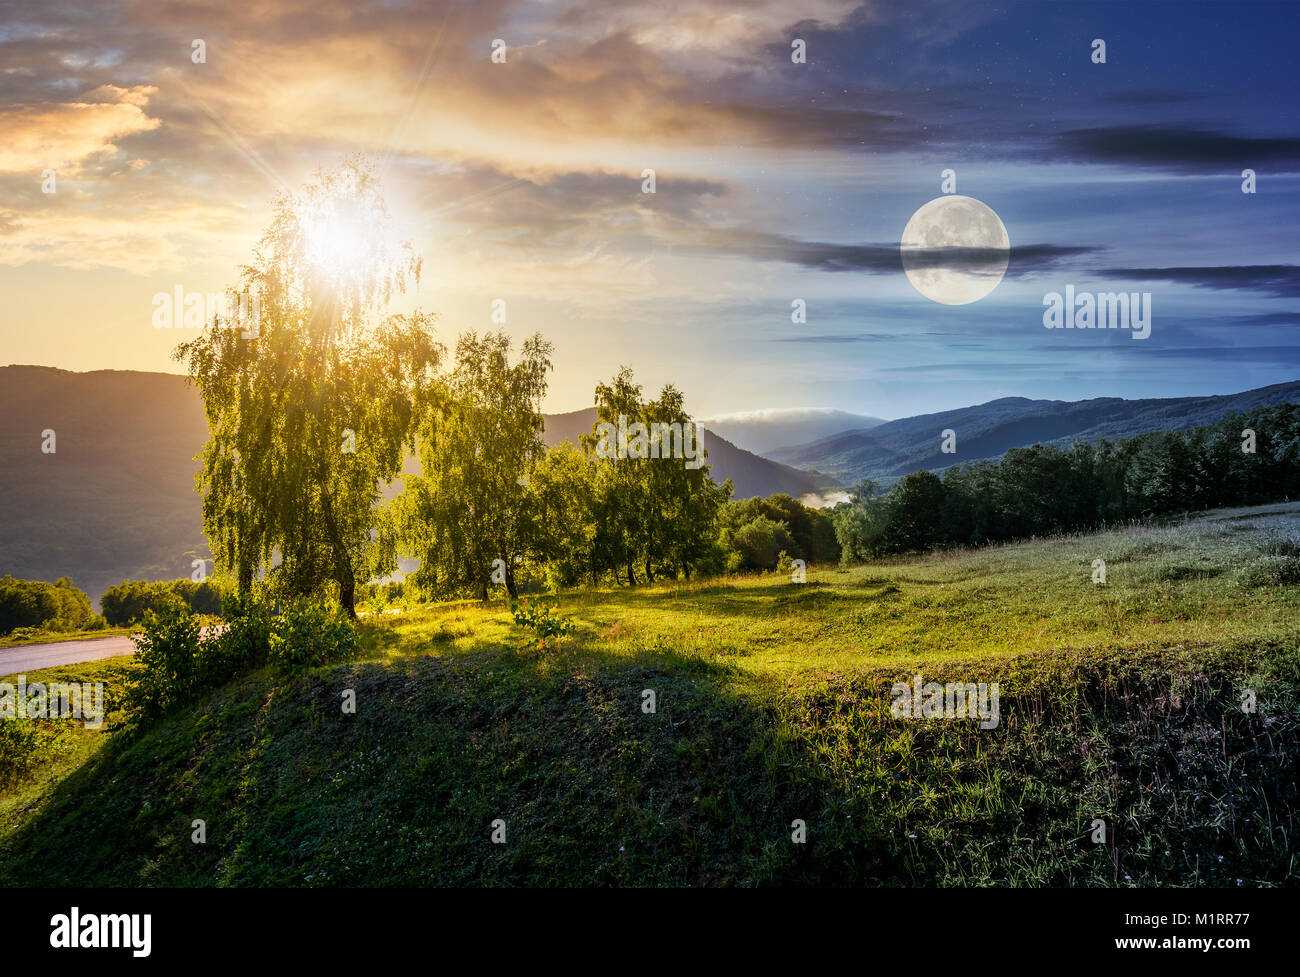 Concept de changement d'heure au-dessus des arbres sur la colline herbeuse en montagnes. belle nature paysage avec soleil et lune Banque D'Images